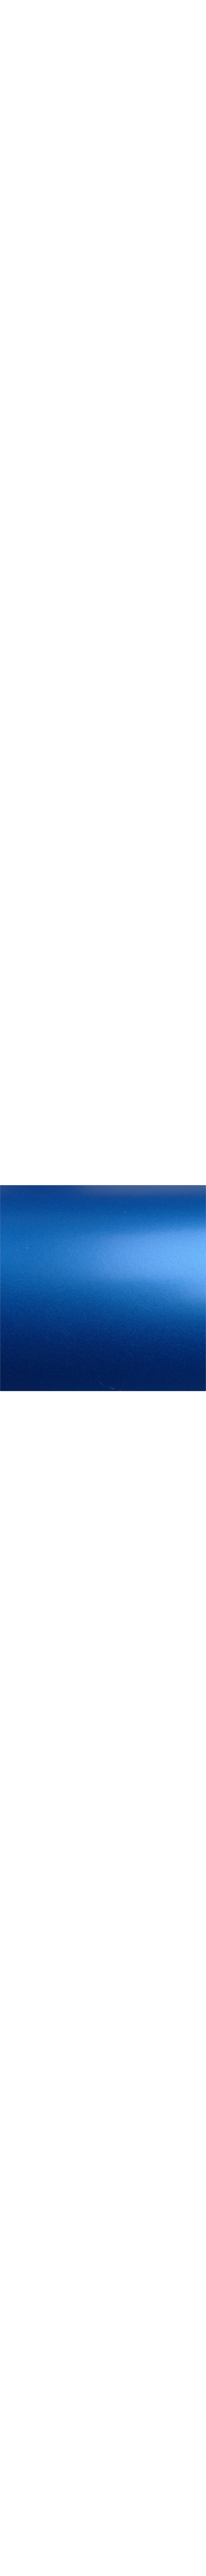 2080-S347 PERFECT BLUE en 1.524m